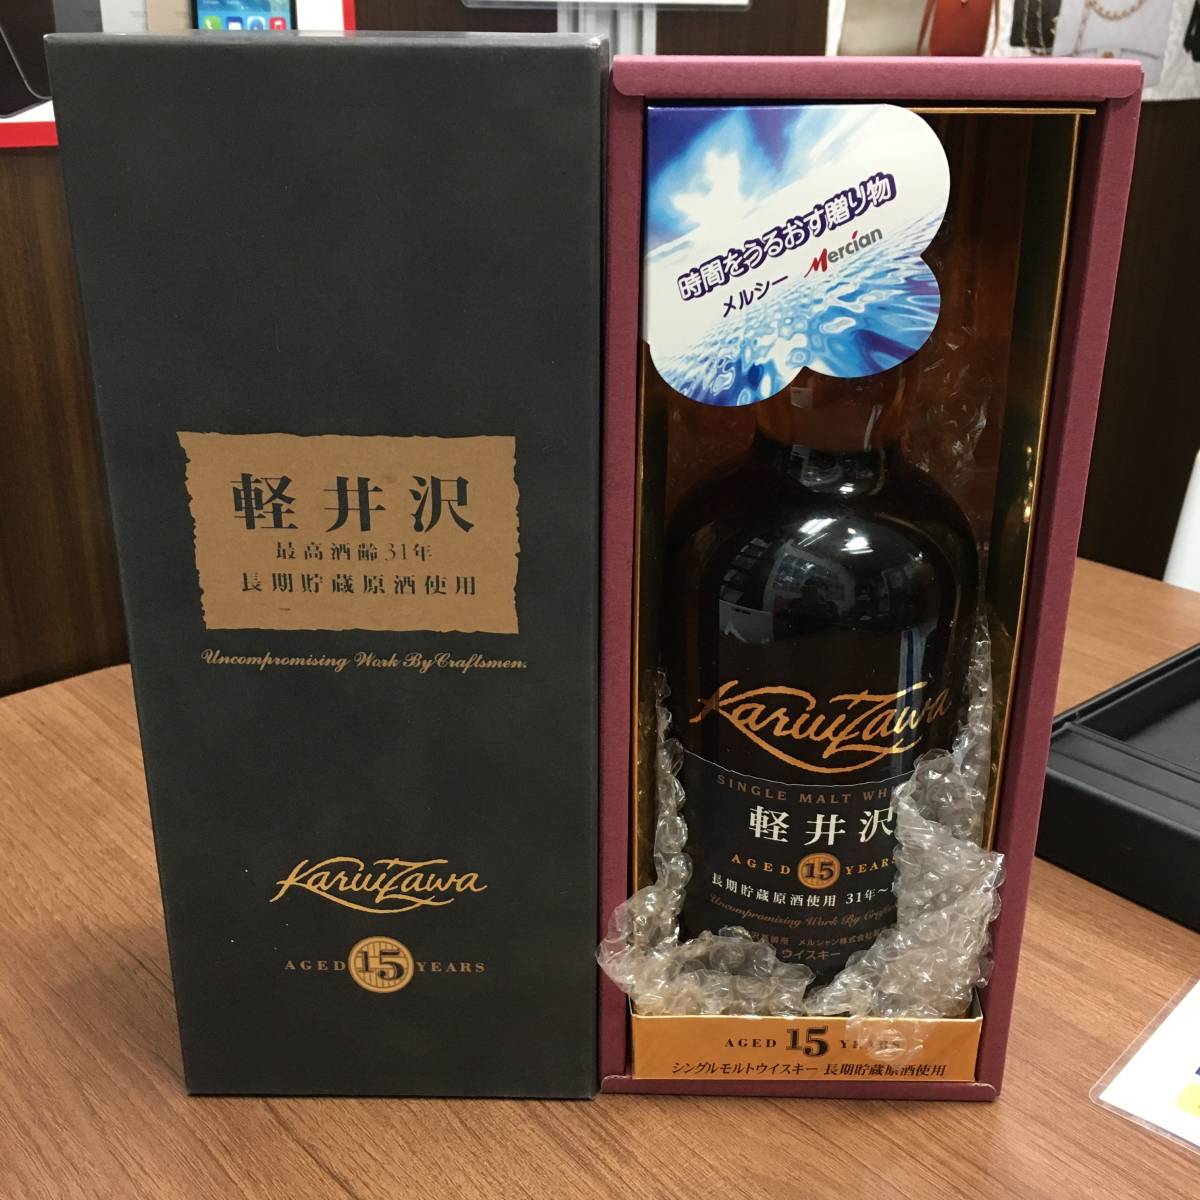 メルシャン 軽井沢 15年 最高酒齢31年 長期貯蔵原酒使用 ウイスキー 